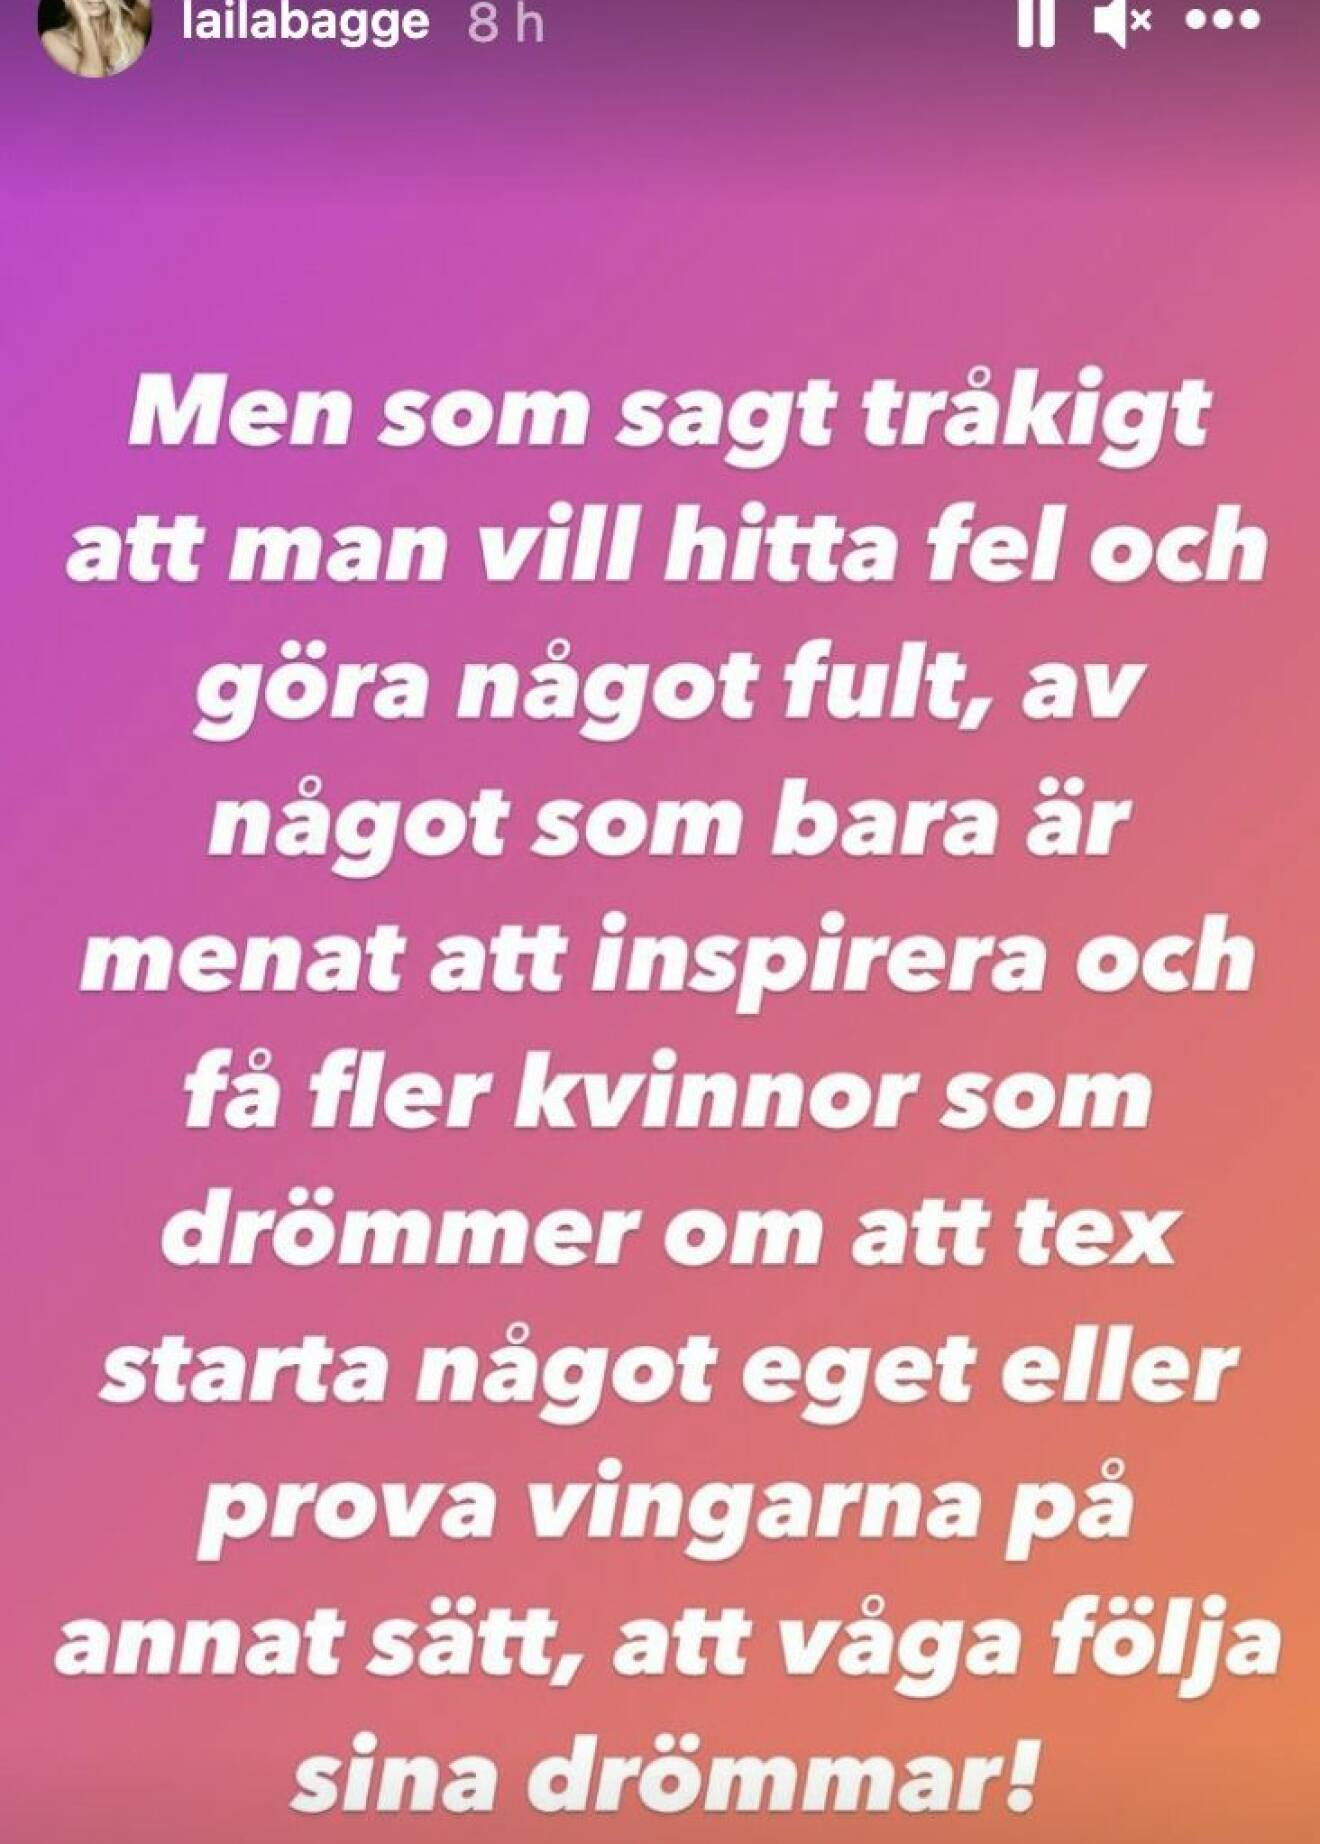 Laila Bagge ger svar på kritiken mot Svenska Powerkvinnor.